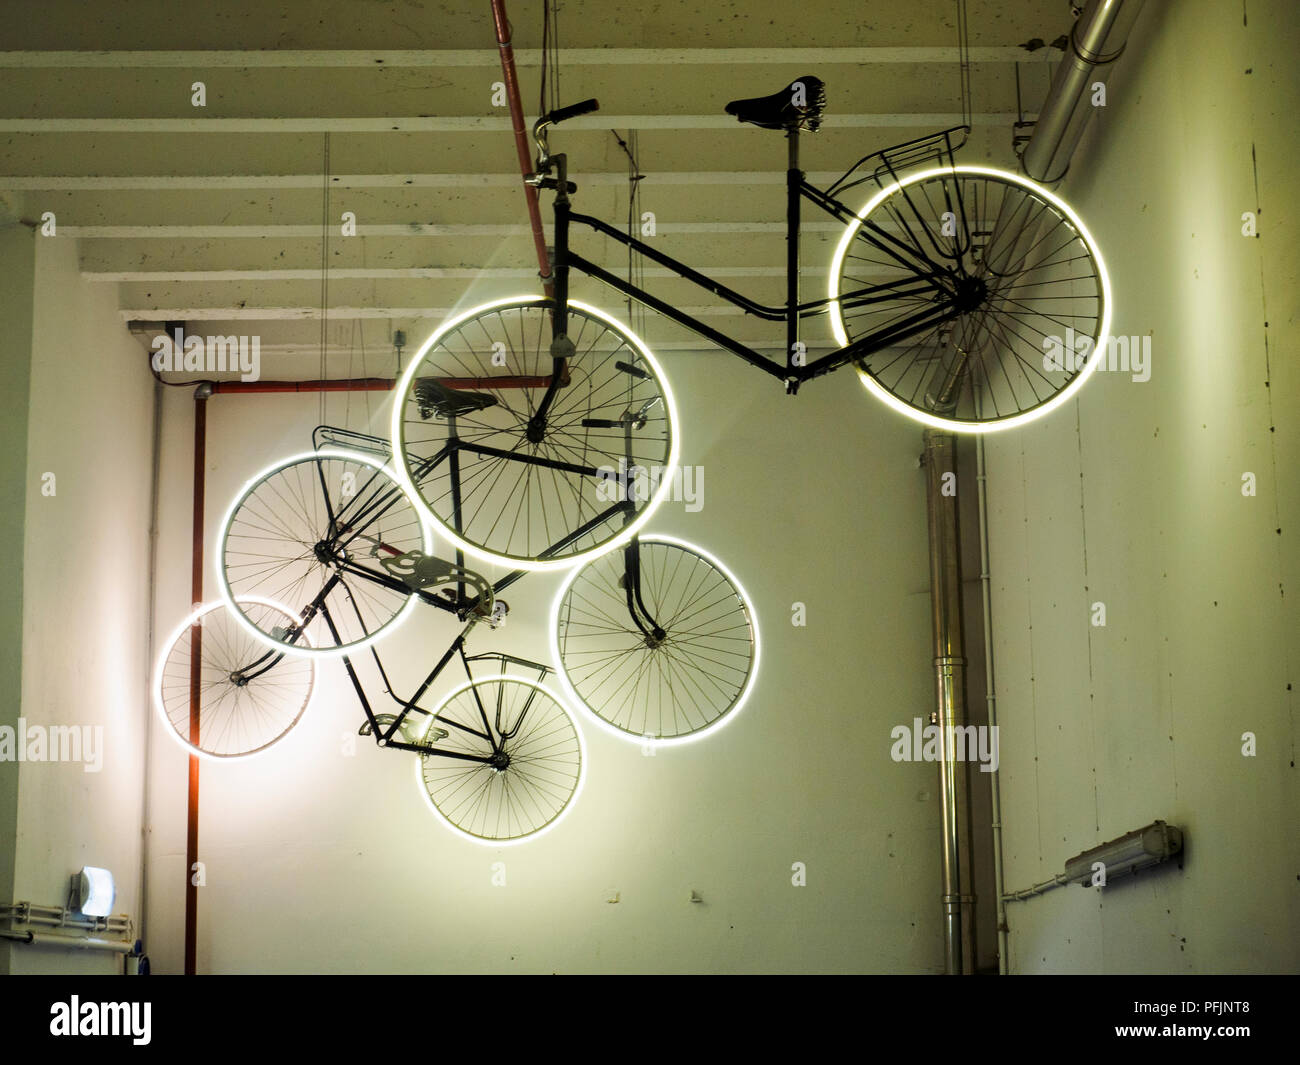 Hängende Fahrräder mit hellen Reifen als eine Anzeige für ein Fahrradverleih Garage - Brügge, Belgien. Stockfoto